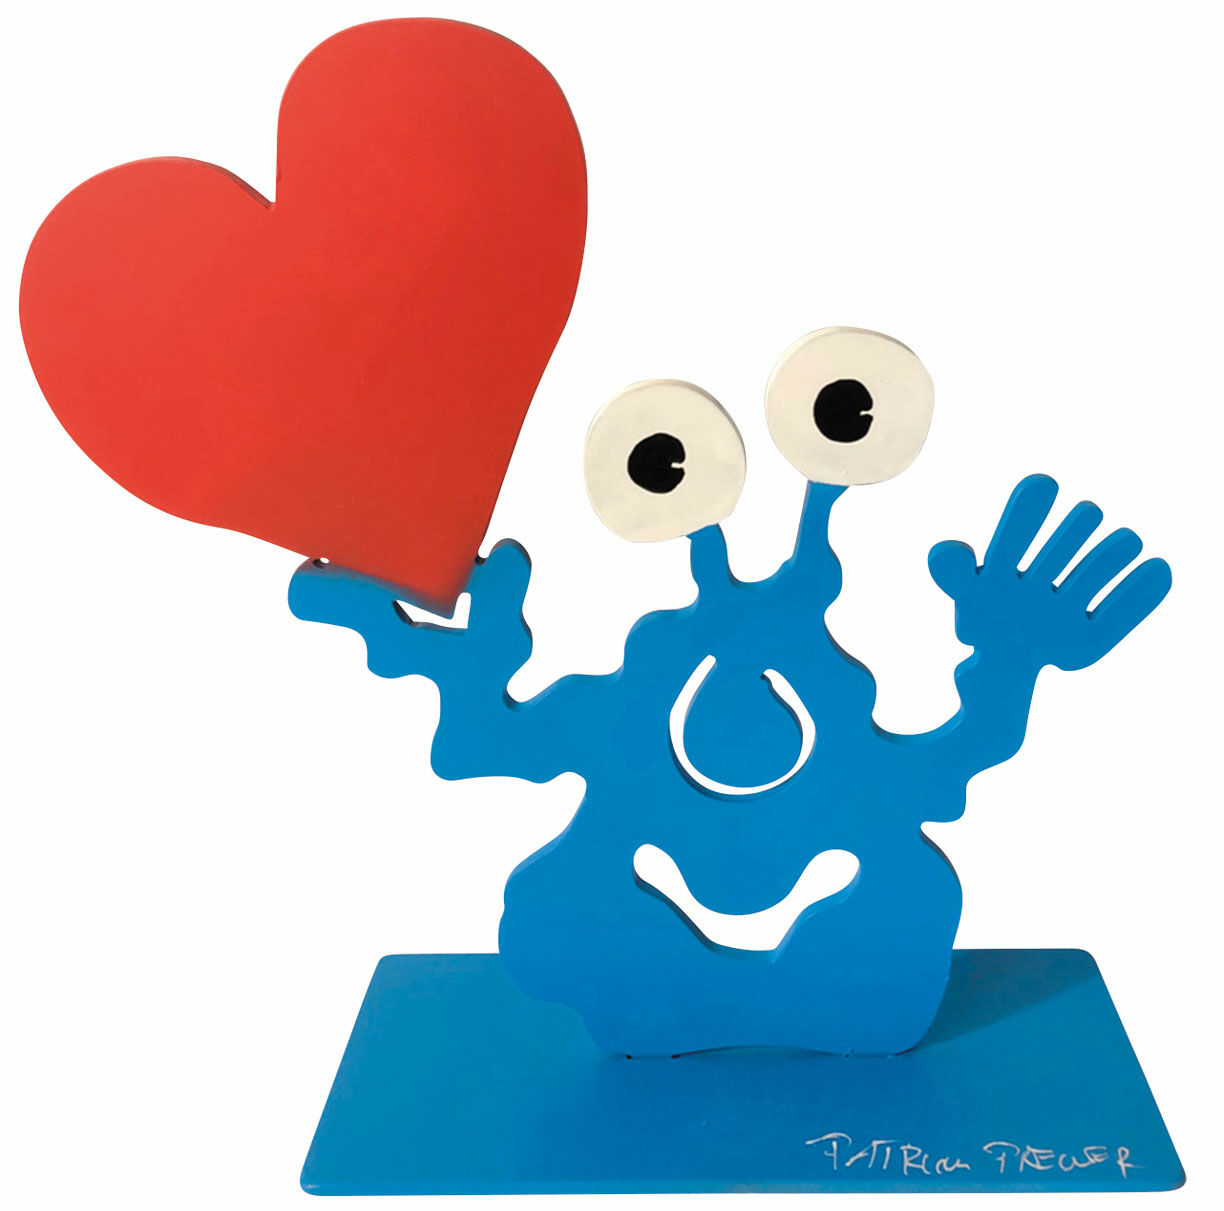 Sculpture "Heart Monster" by Patrick Preller